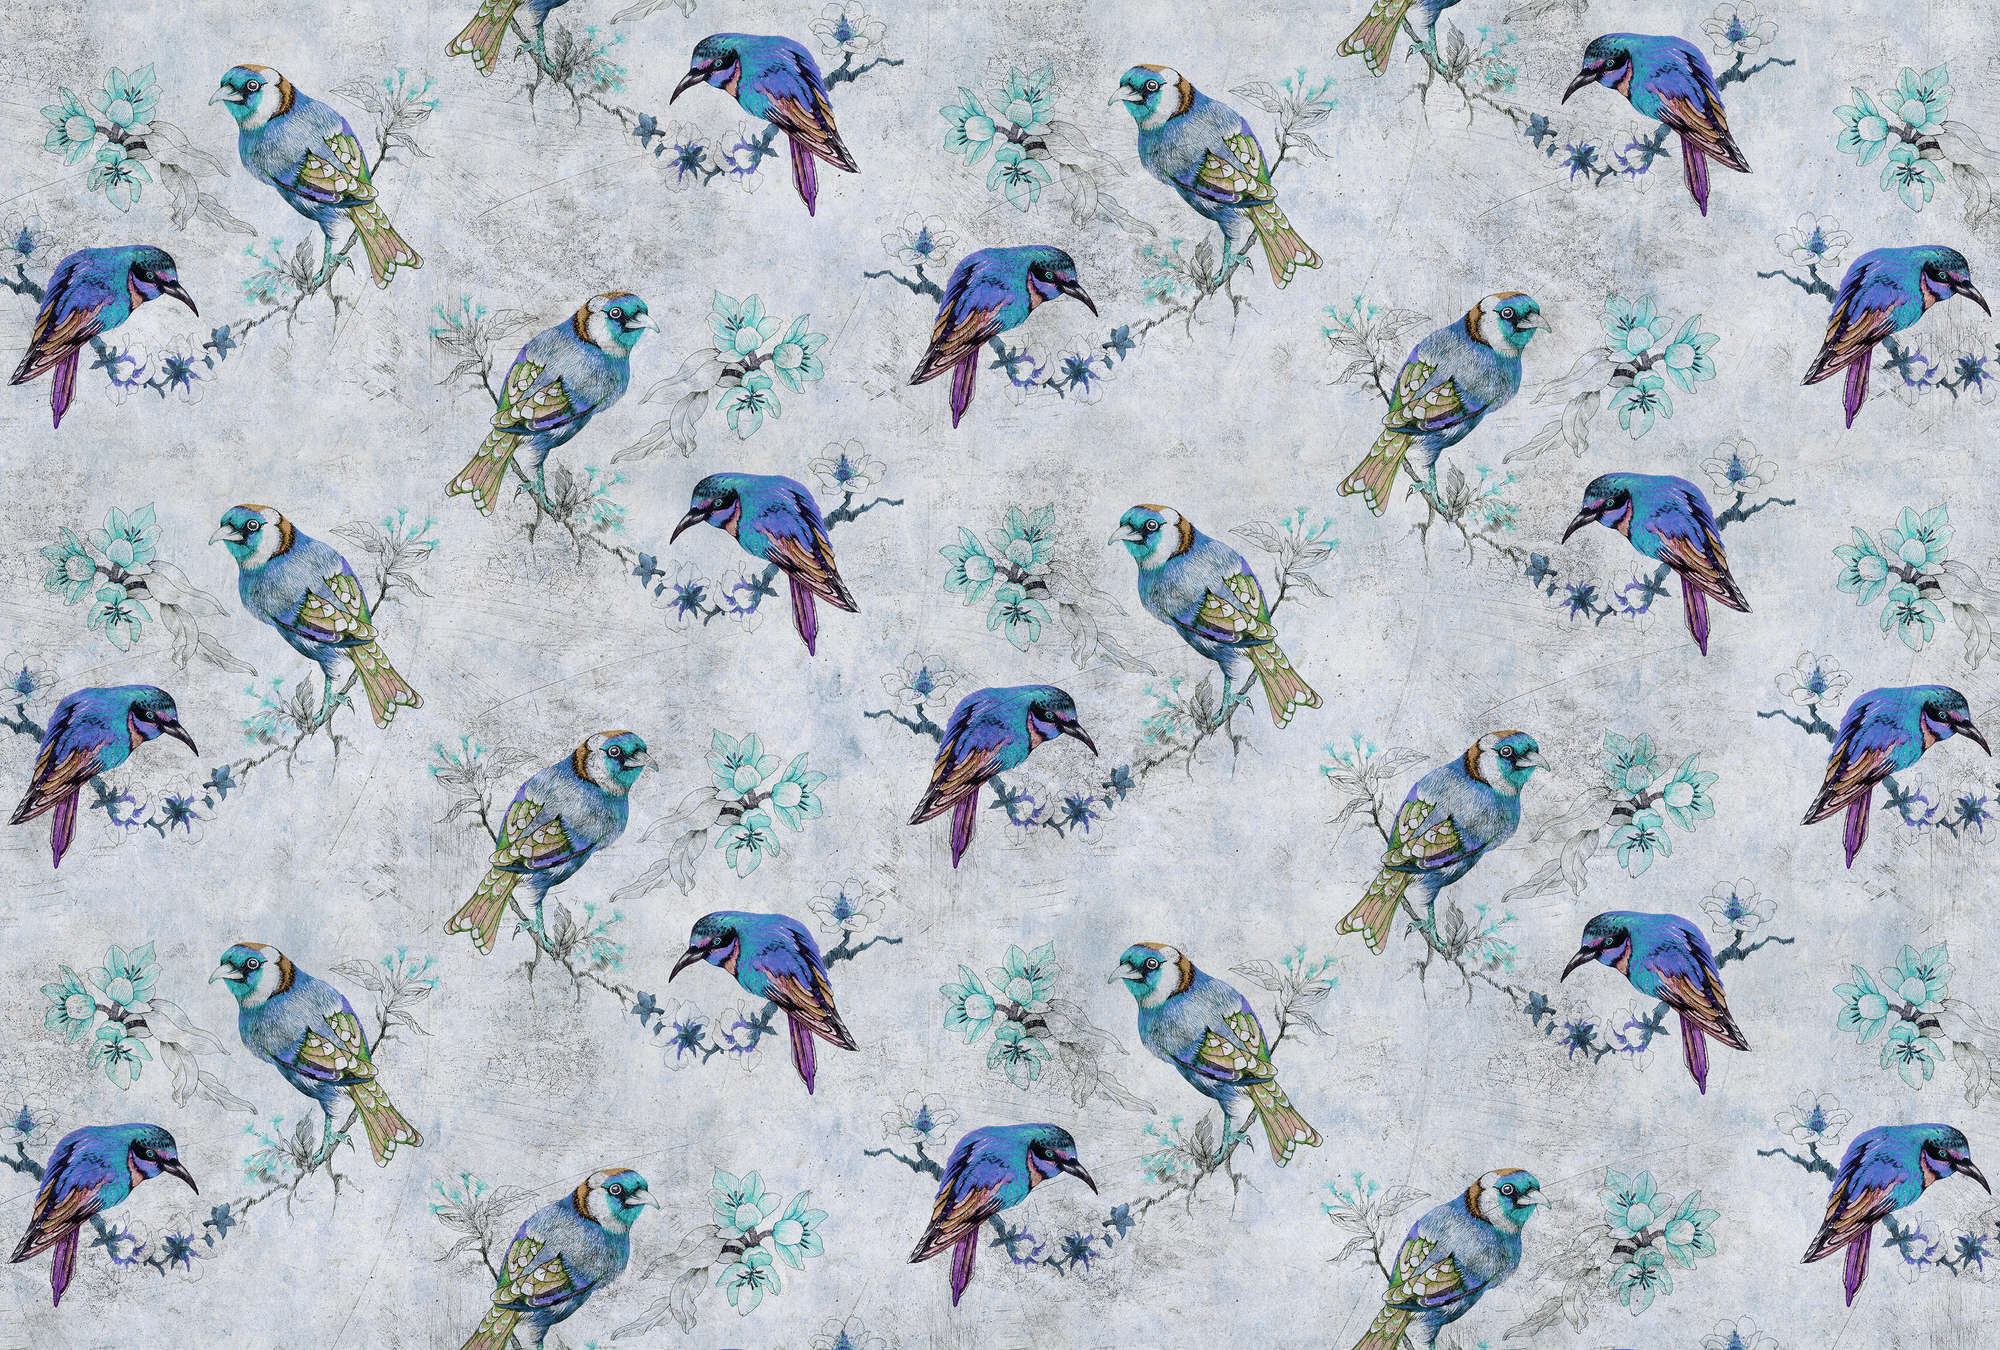             Love birds 1 - Fototapete Vogel-Muster im Zeichenstil in kratzer Struktur – Blau, Grau | Mattes Glattvlies
        